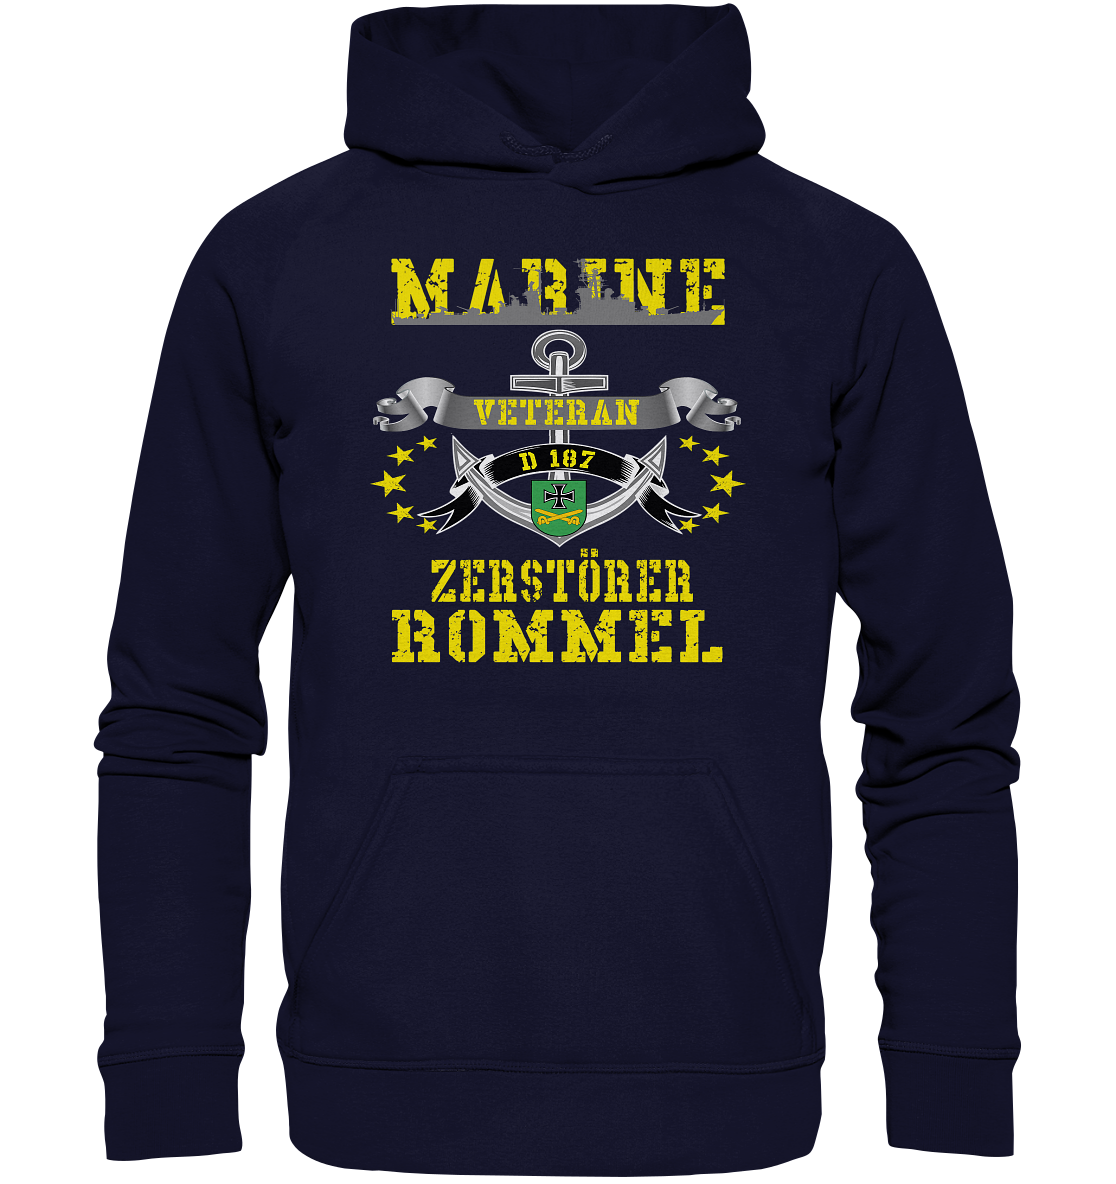 Zerstörer D187 ROMMEL Marine Veteran - Basic Unisex Hoodie